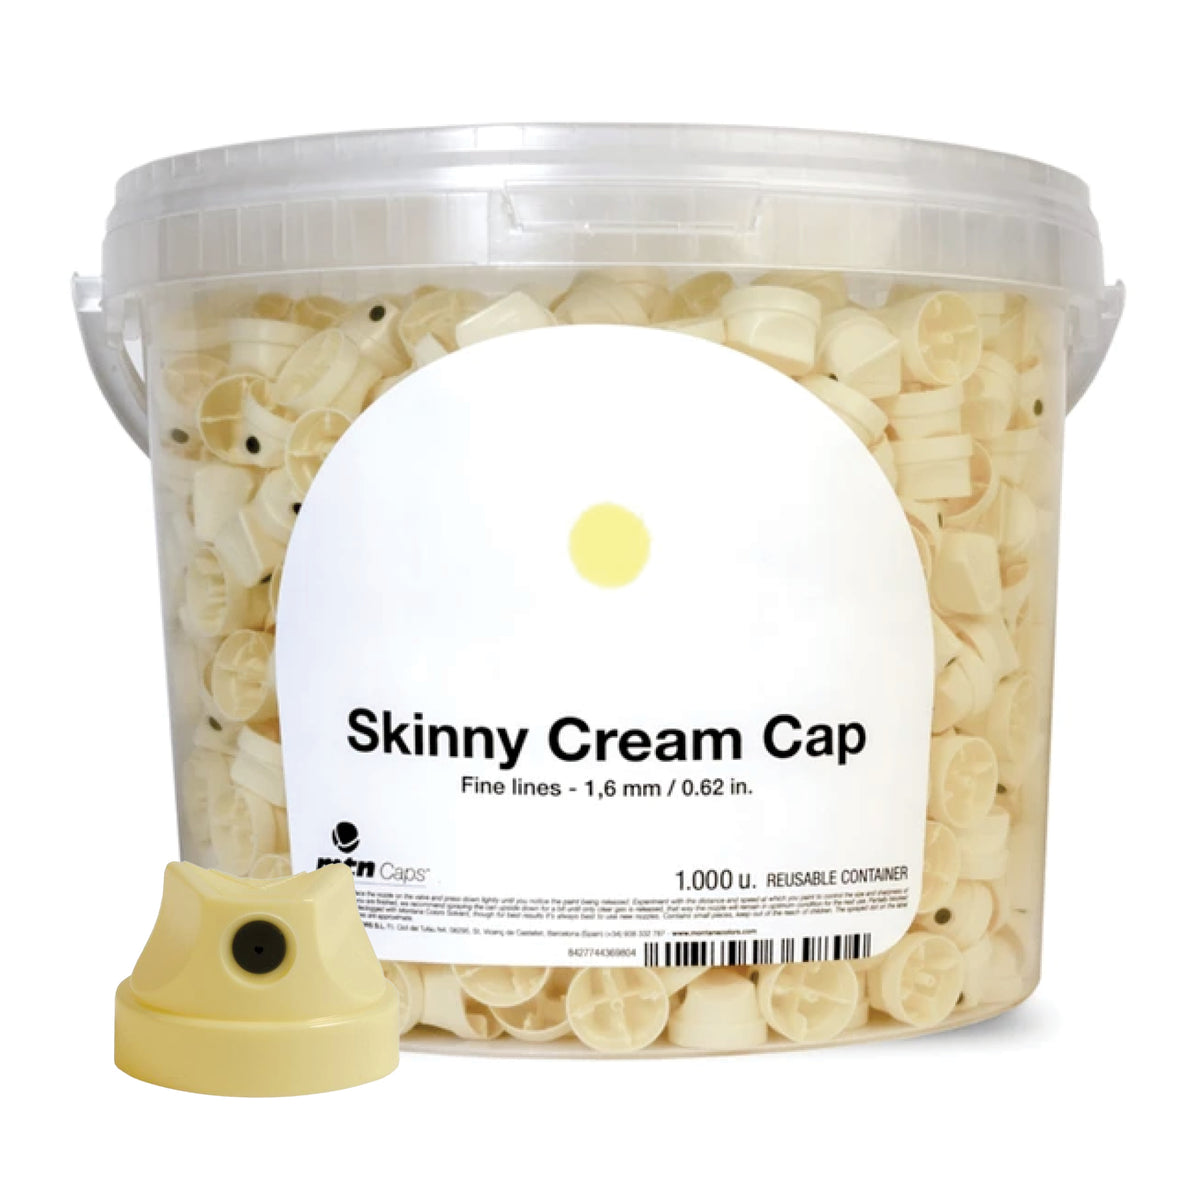 Skinny Cream Cap